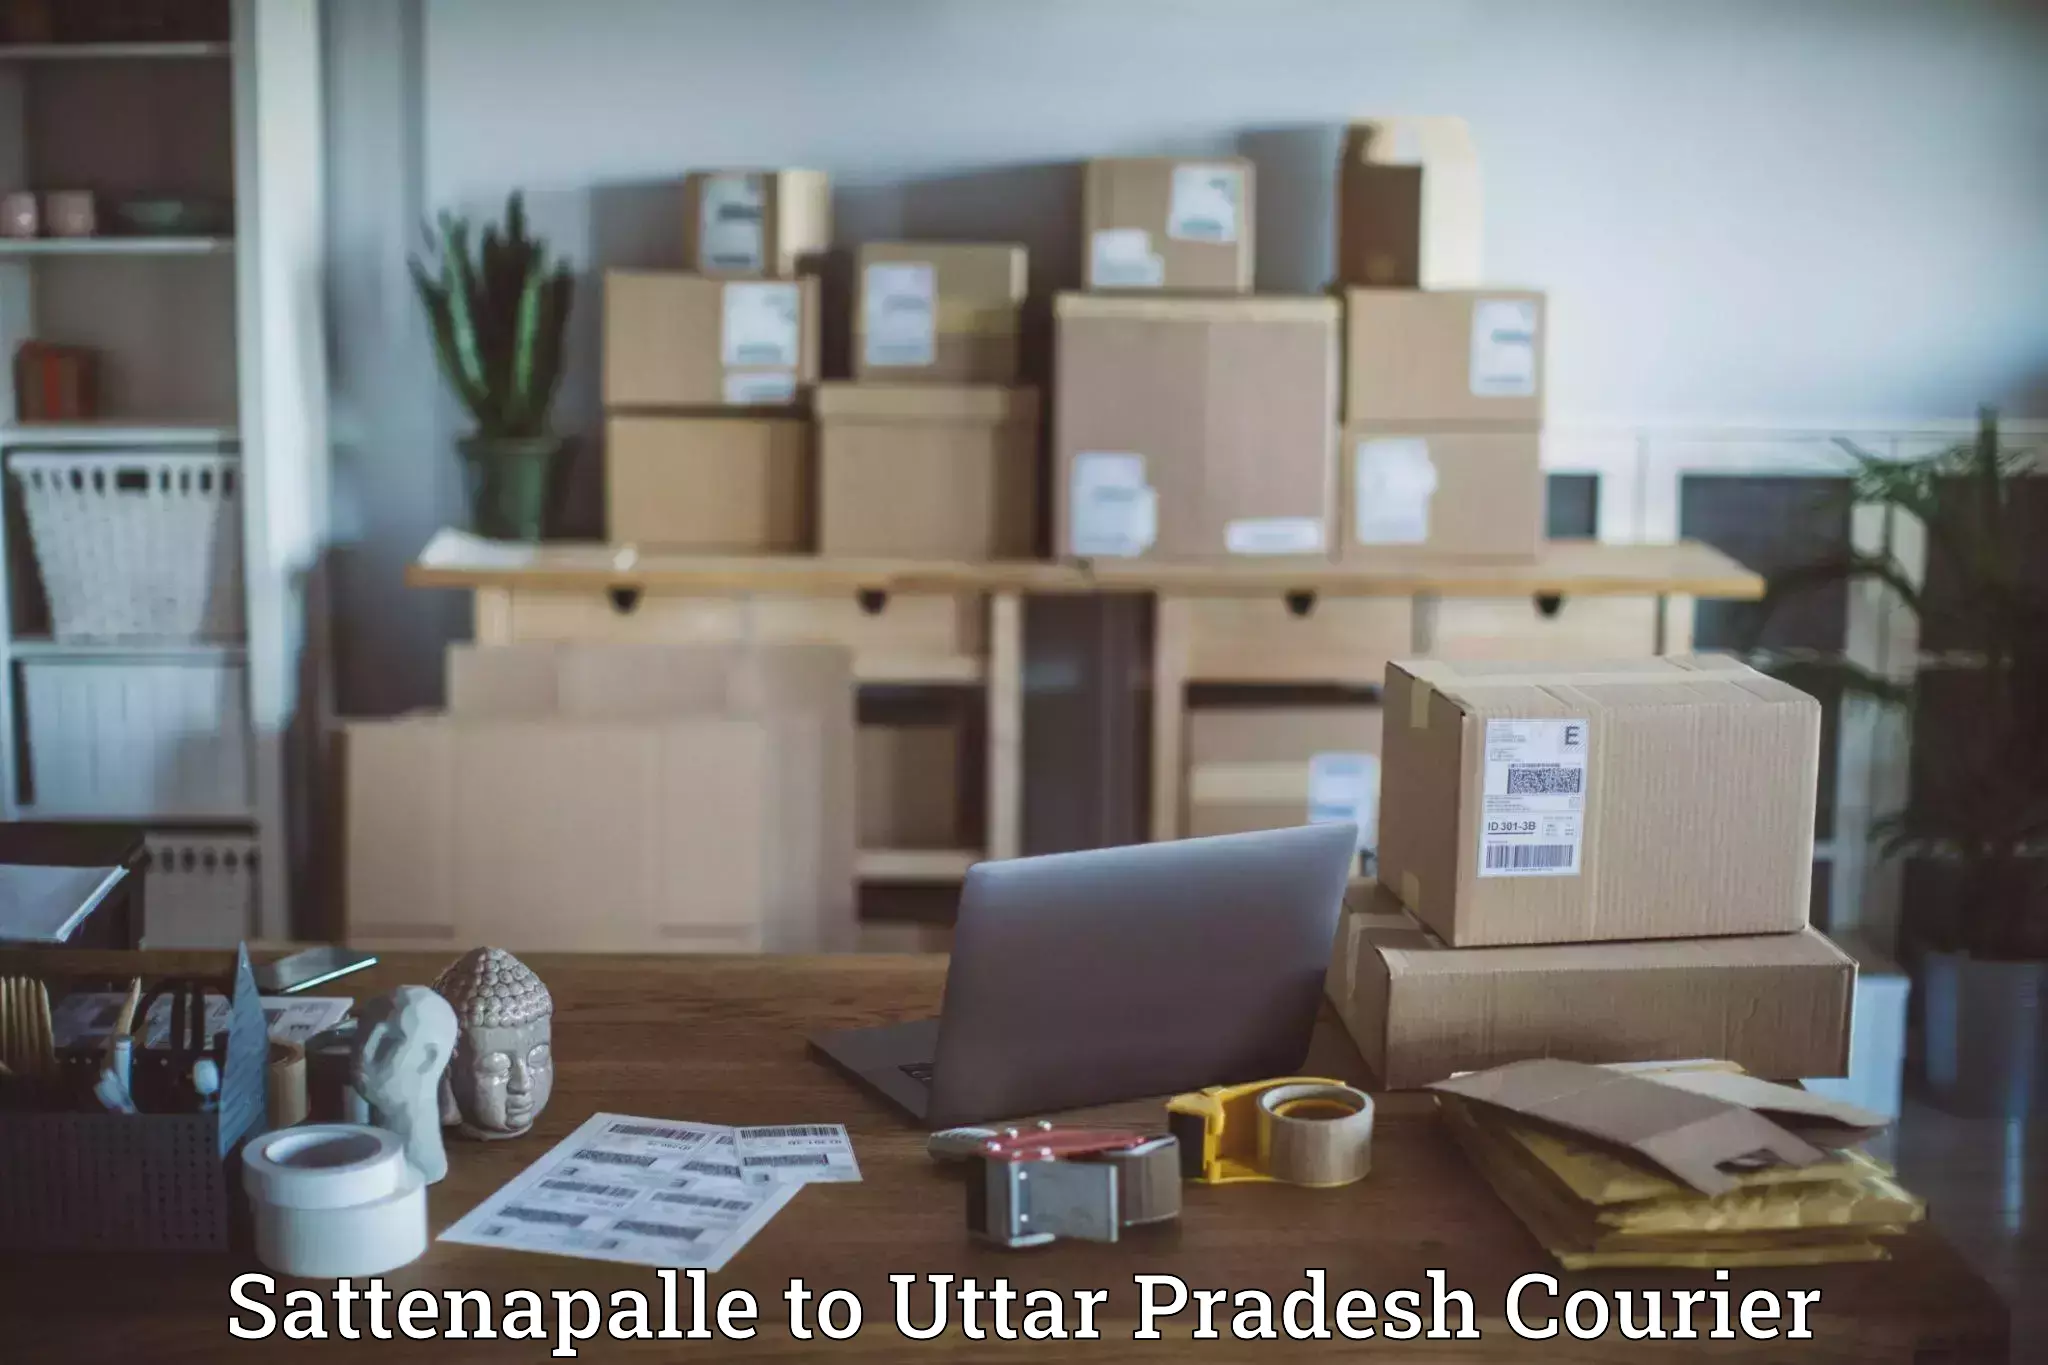 Efficient parcel service Sattenapalle to Gosainganj